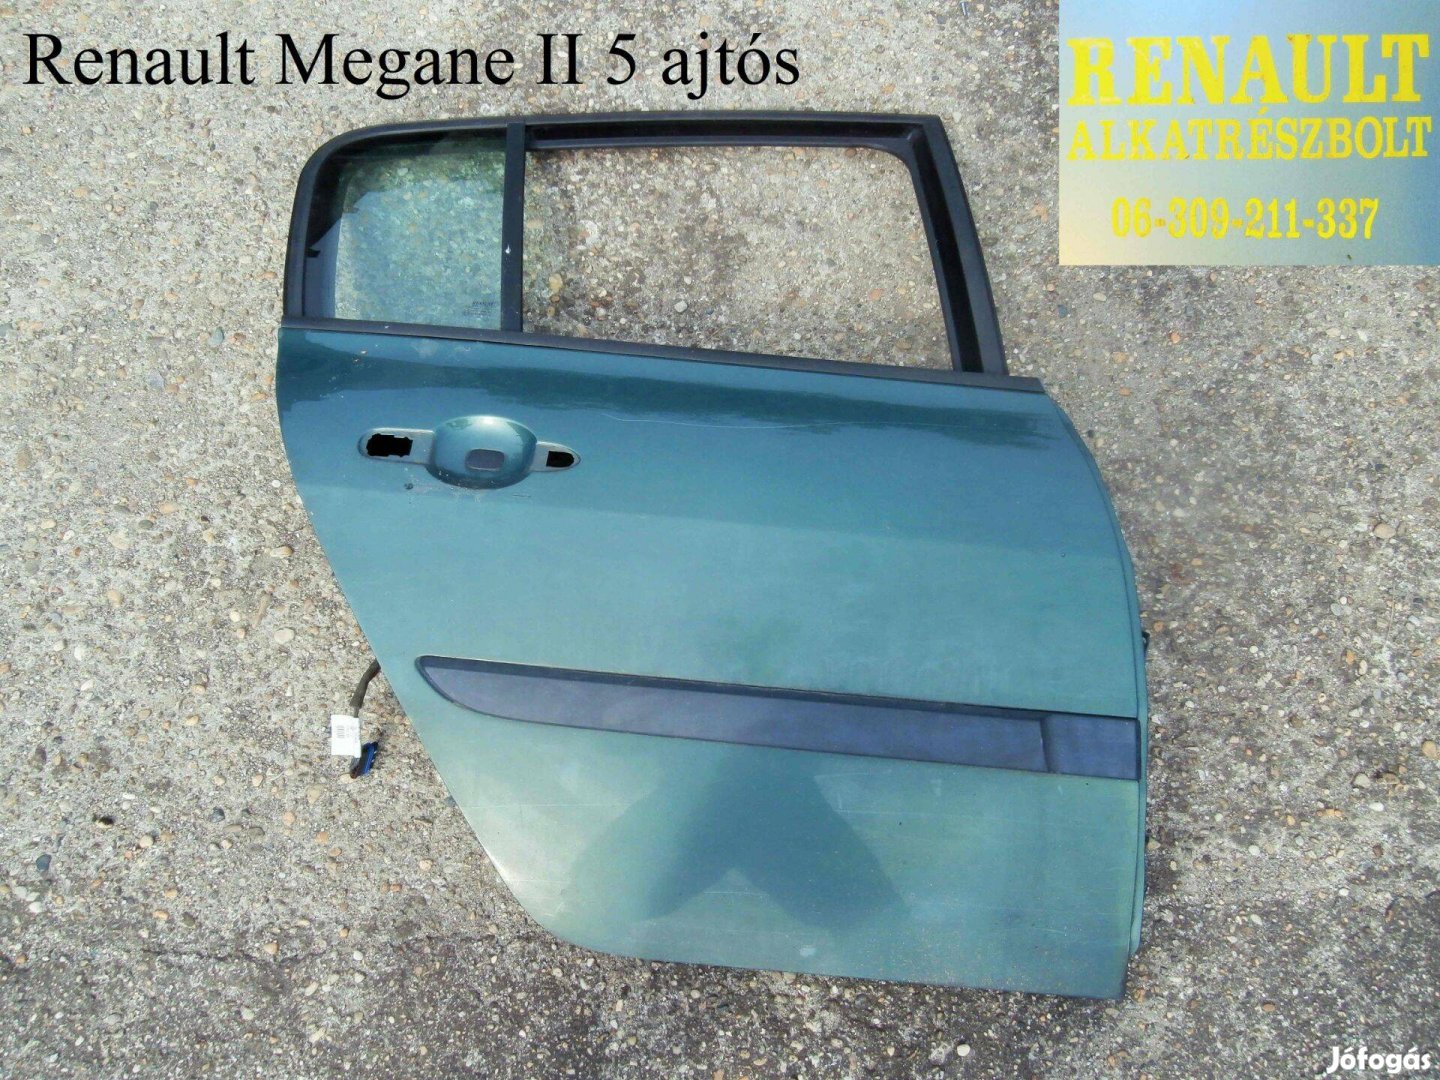 Renault Megane II 5 ajtós jobb hátsó ajtó